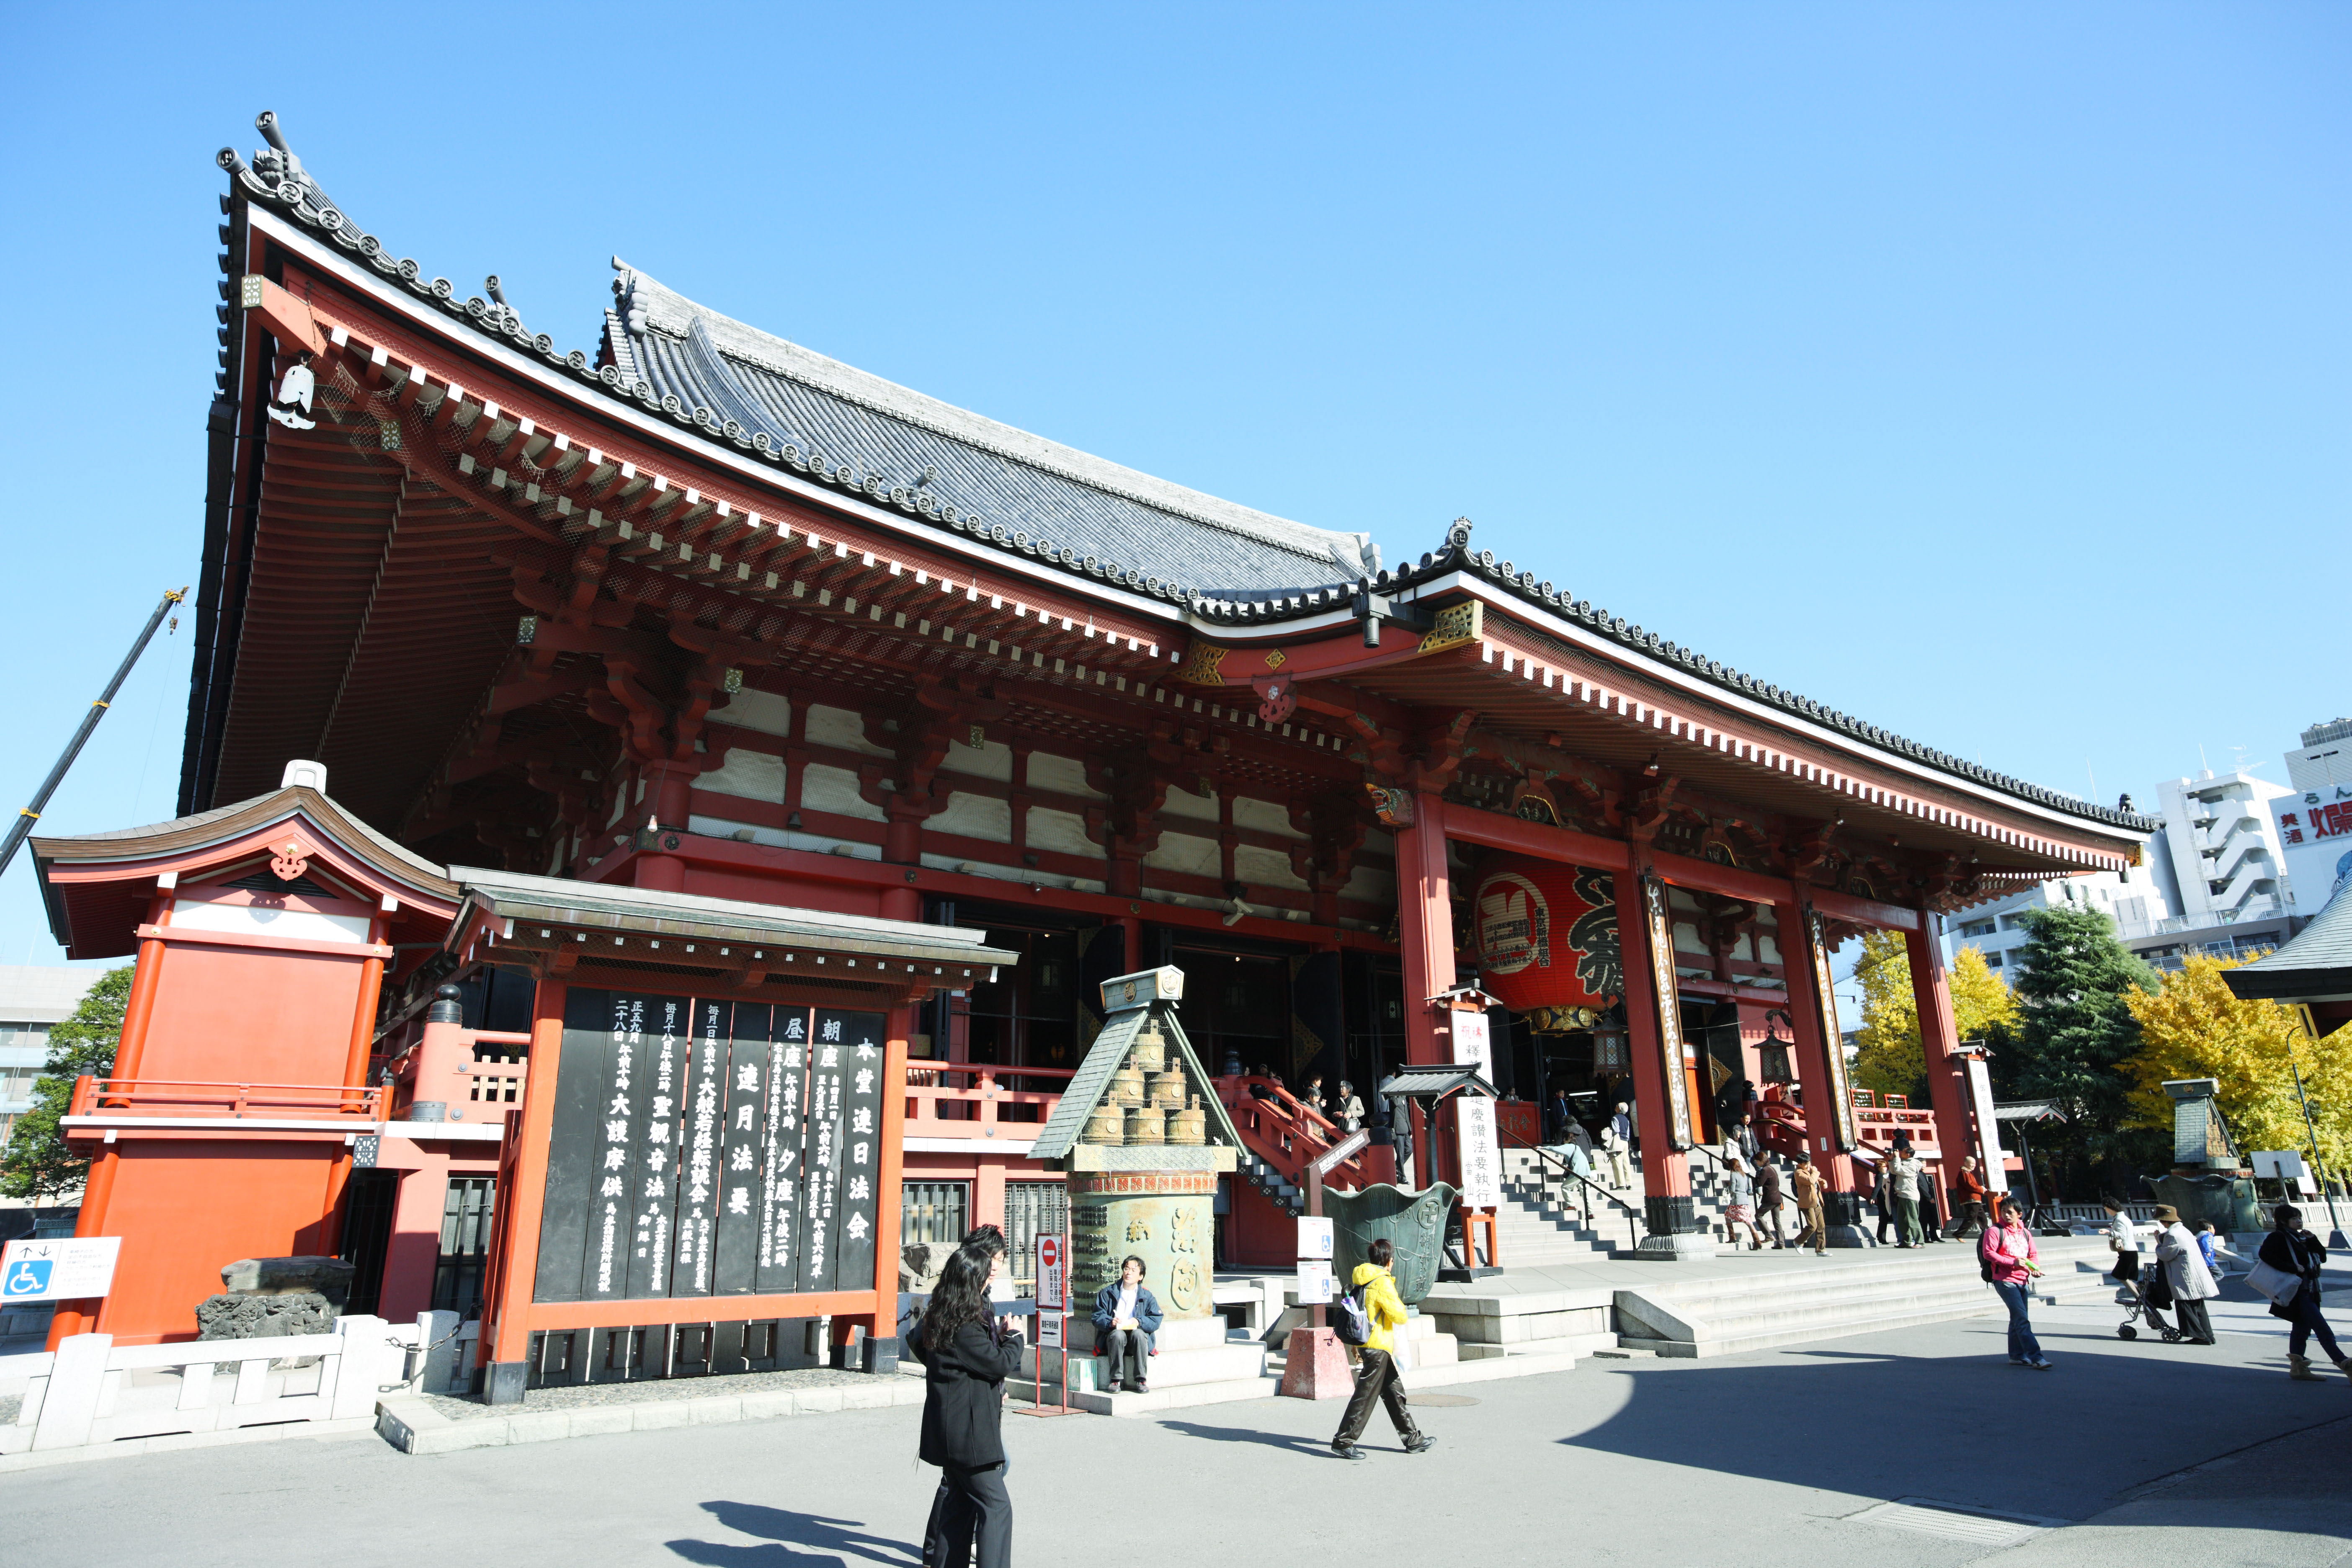 fotografia, material, livra, ajardine, imagine, proveja fotografia,O Templo de Senso-ji corredor principal de um templo budista, visitando lugares tursticos mancha, Templo de Senso-ji, Asakusa, lanterna